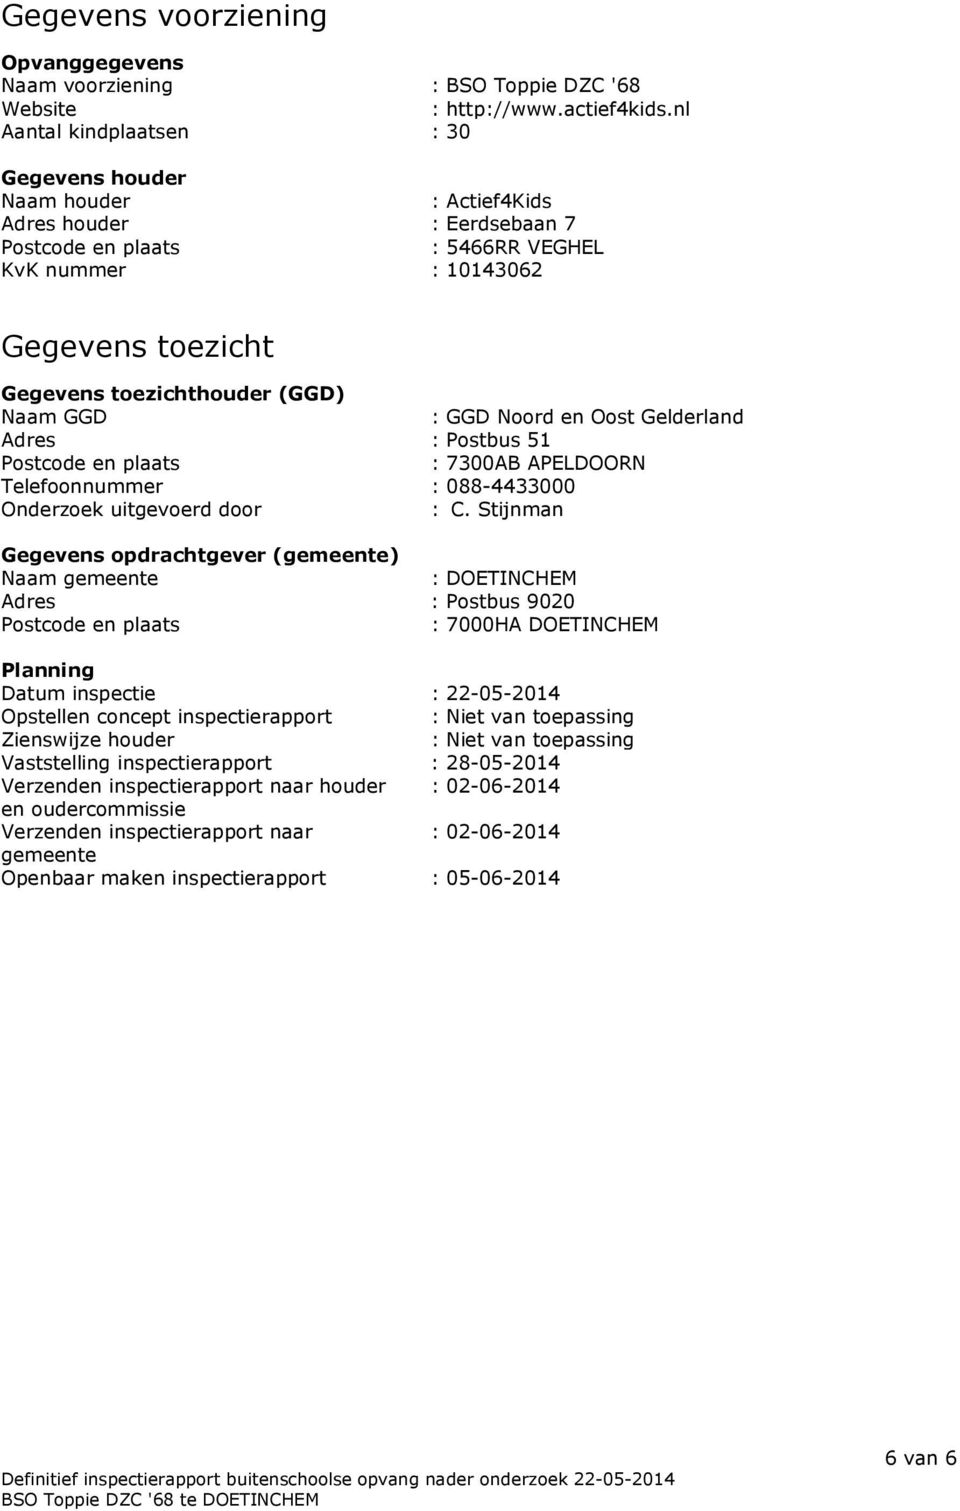 (GGD) Naam GGD : GGD Noord en Oost Gelderland Adres : Postbus 51 Postcode en plaats : 7300AB APELDOORN Telefoonnummer : 088-4433000 Onderzoek uitgevoerd door : C.